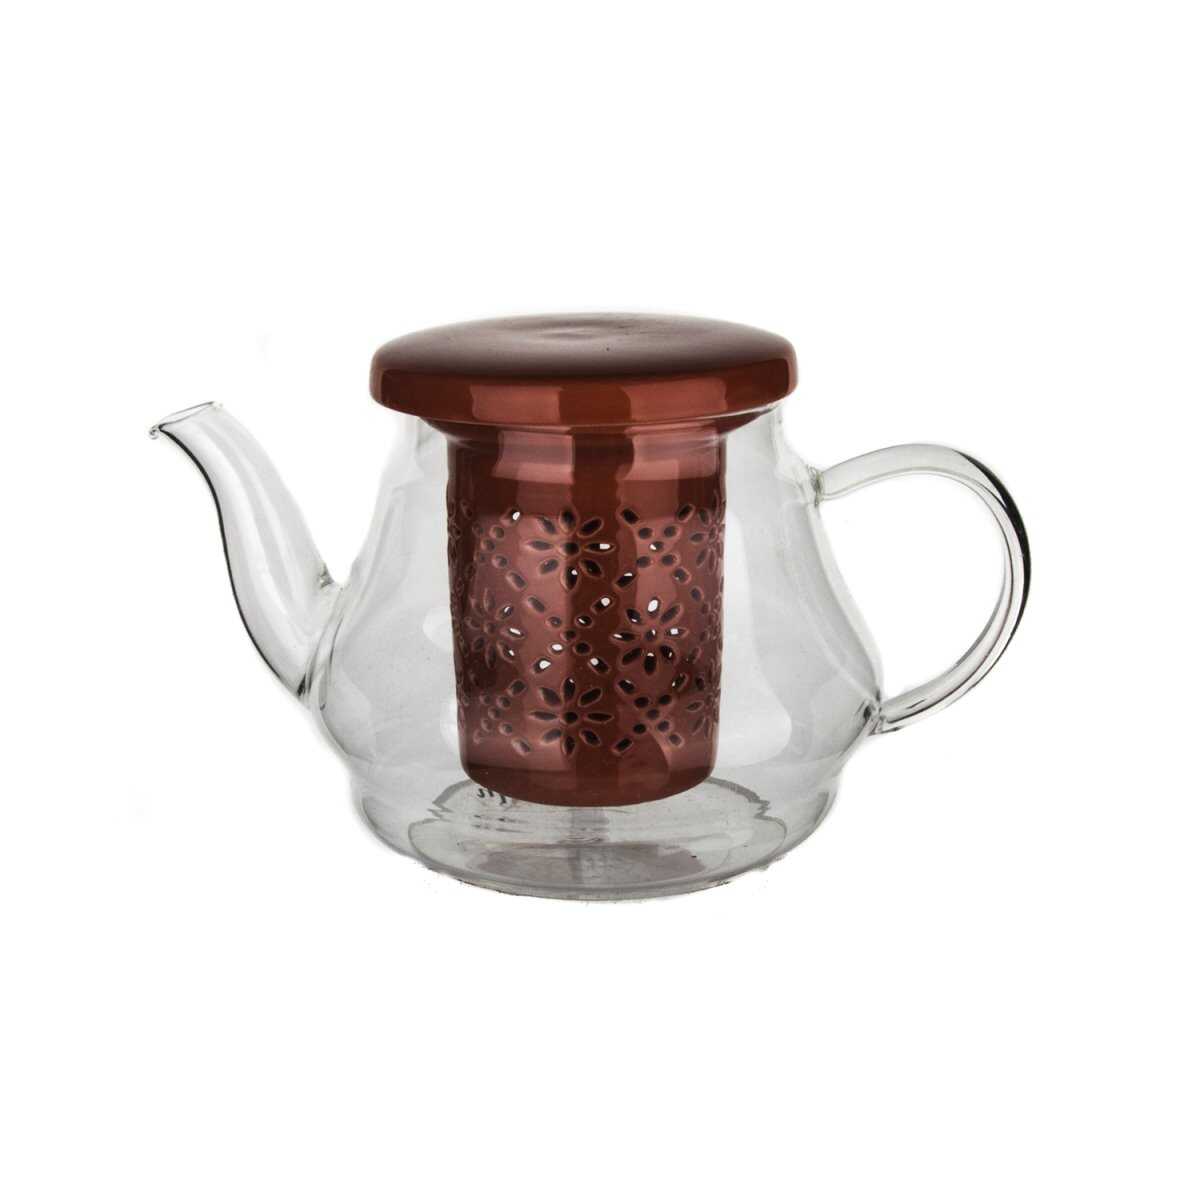 إبريق شاي من البورسلين مع مصفاة وغطاء باللون الأحمر